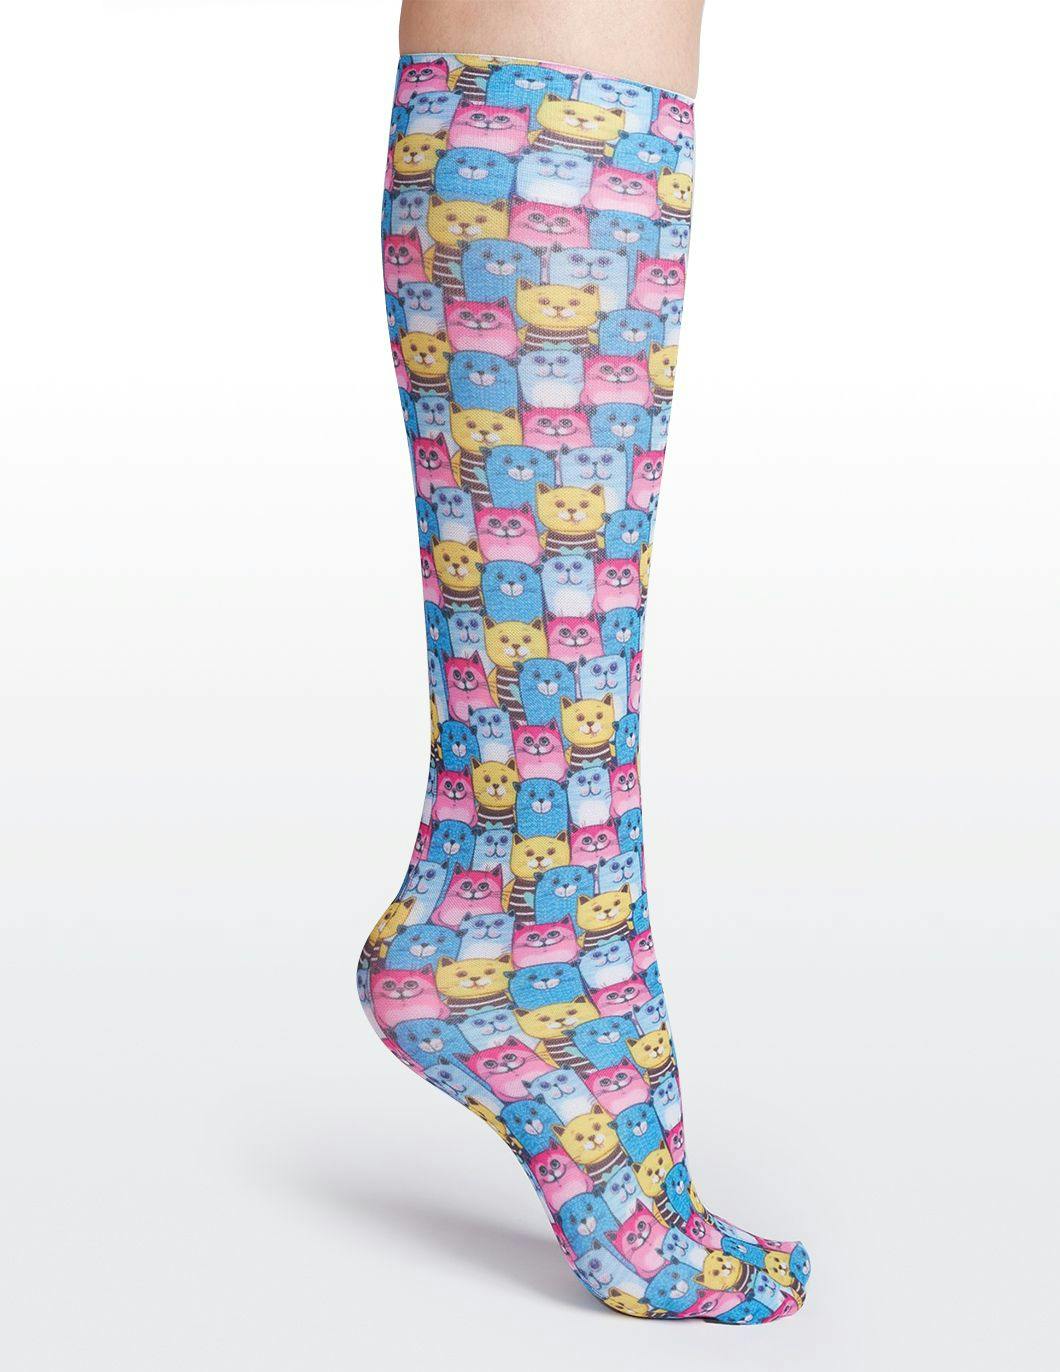 cutieful-compression-socks-8-15-mmhg kozy-kats-print